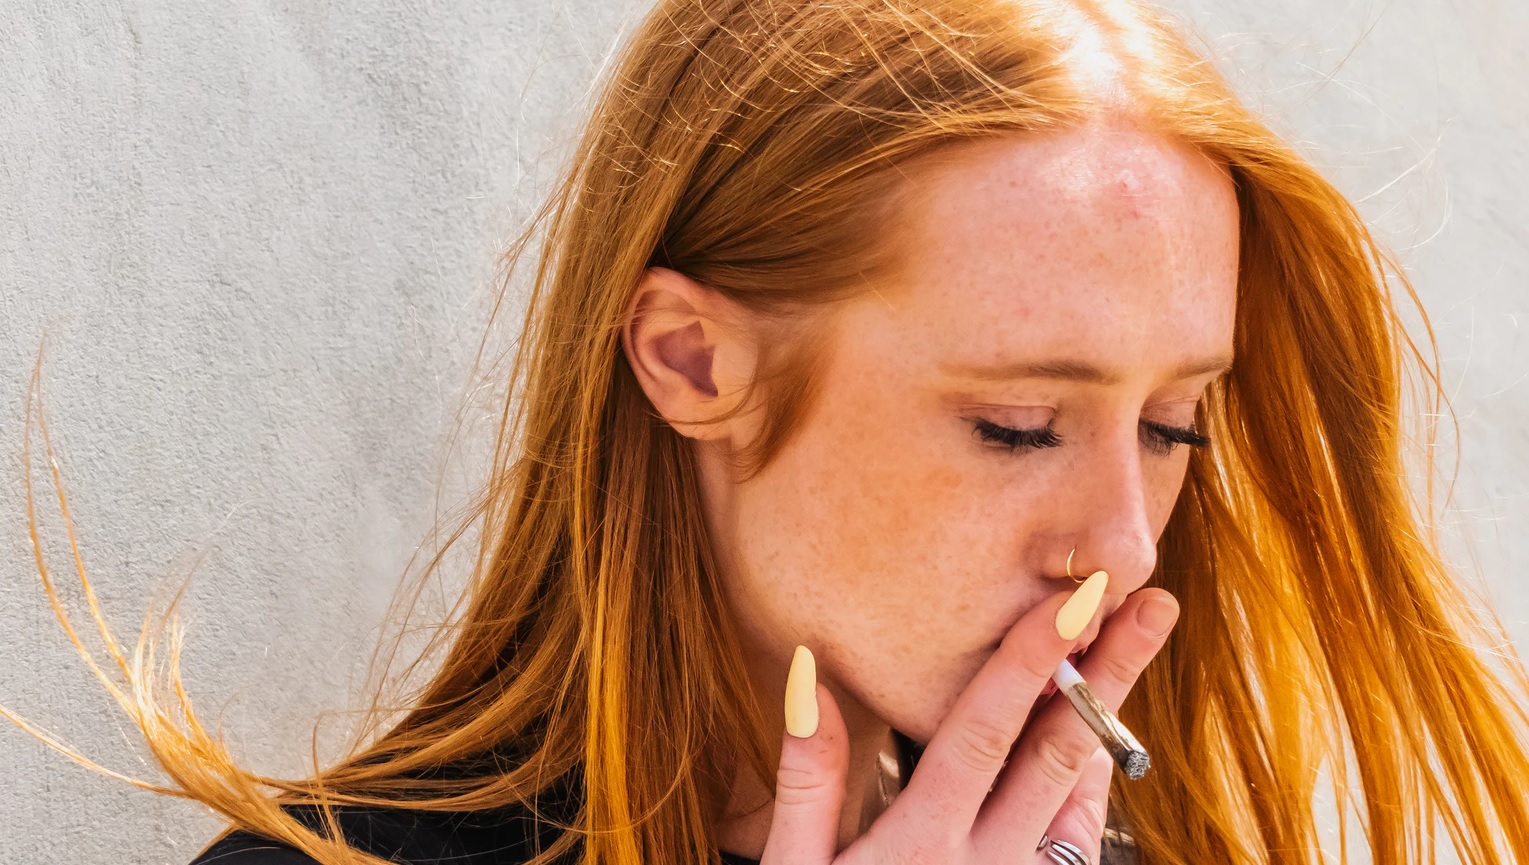 Foto, em close e meio perfil, de uma mulher de cabelo ruivo que segura um cigarro de maconha aceso à boca, entre os dedos indicador e médio, mostrando as unhas compridas amarelas no polegar e indicador. Fotografia: Alex Woods | Unsplash.